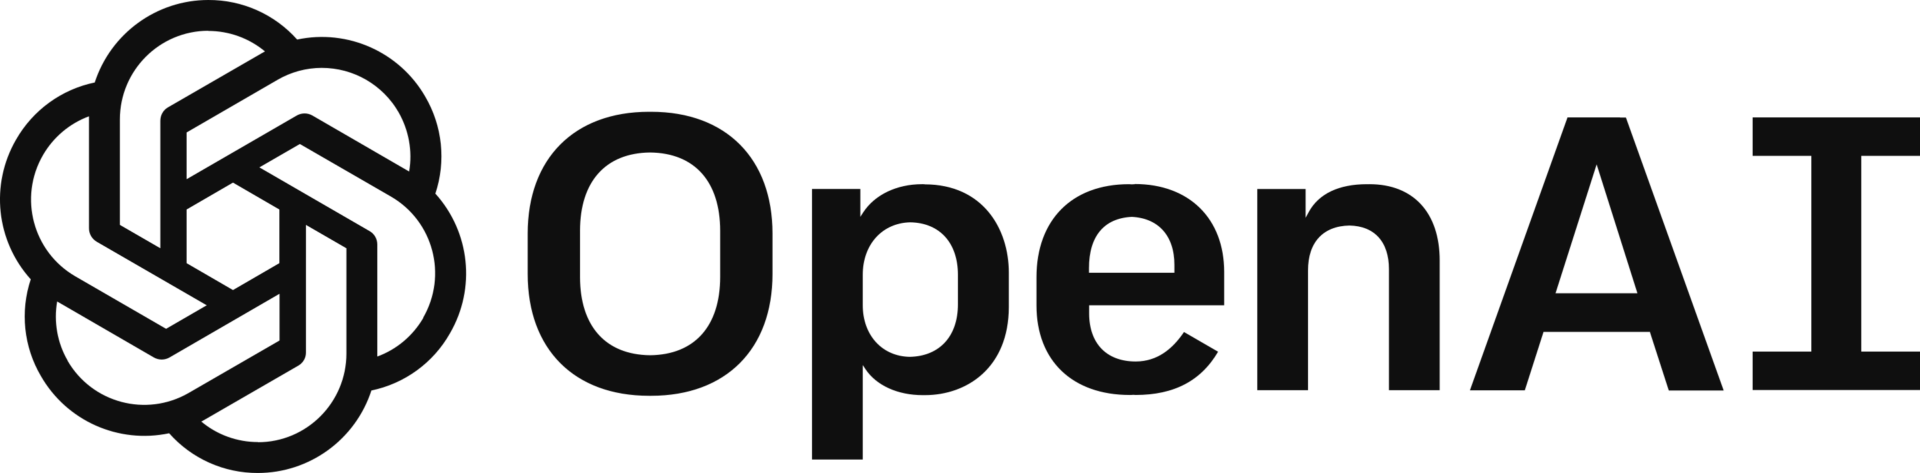 OpenAIのロゴ。